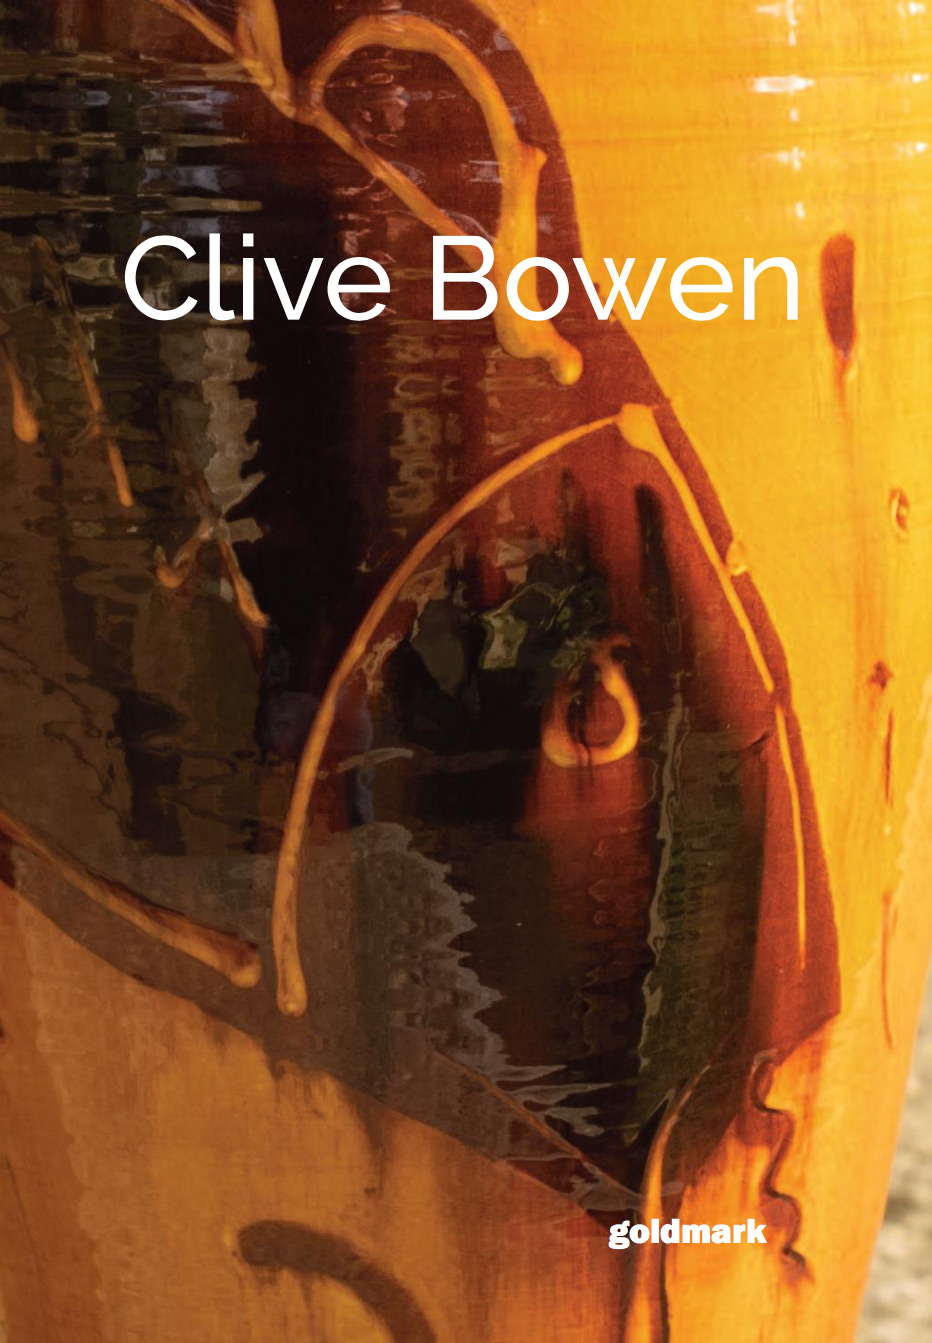 Clive Bowen - Monograph 2019